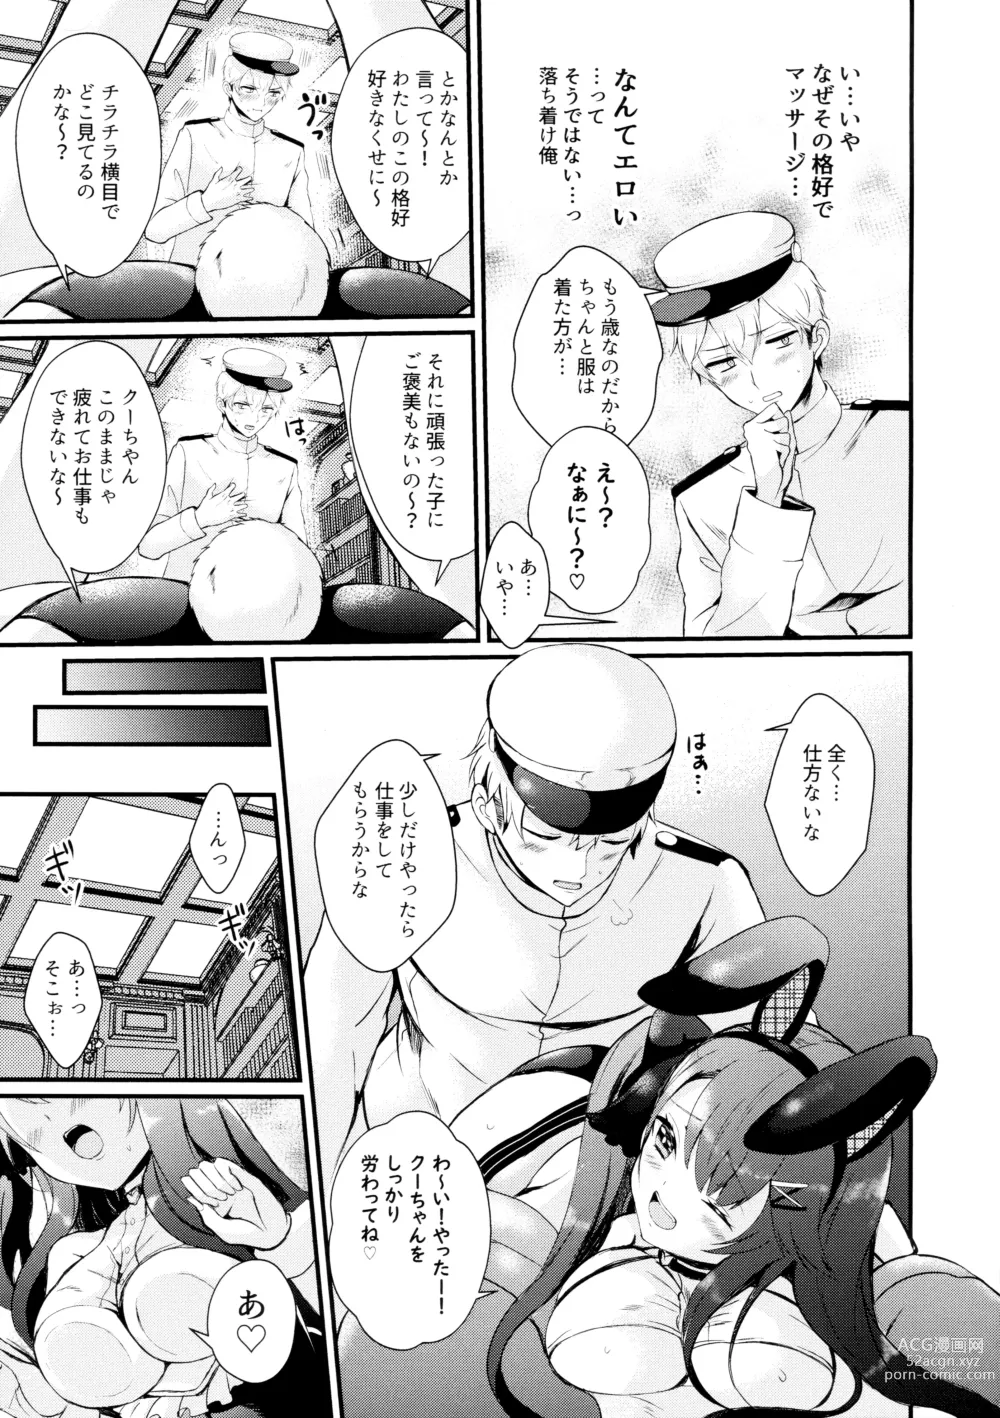 Page 9 of doujinshi Koakuma Rabbit